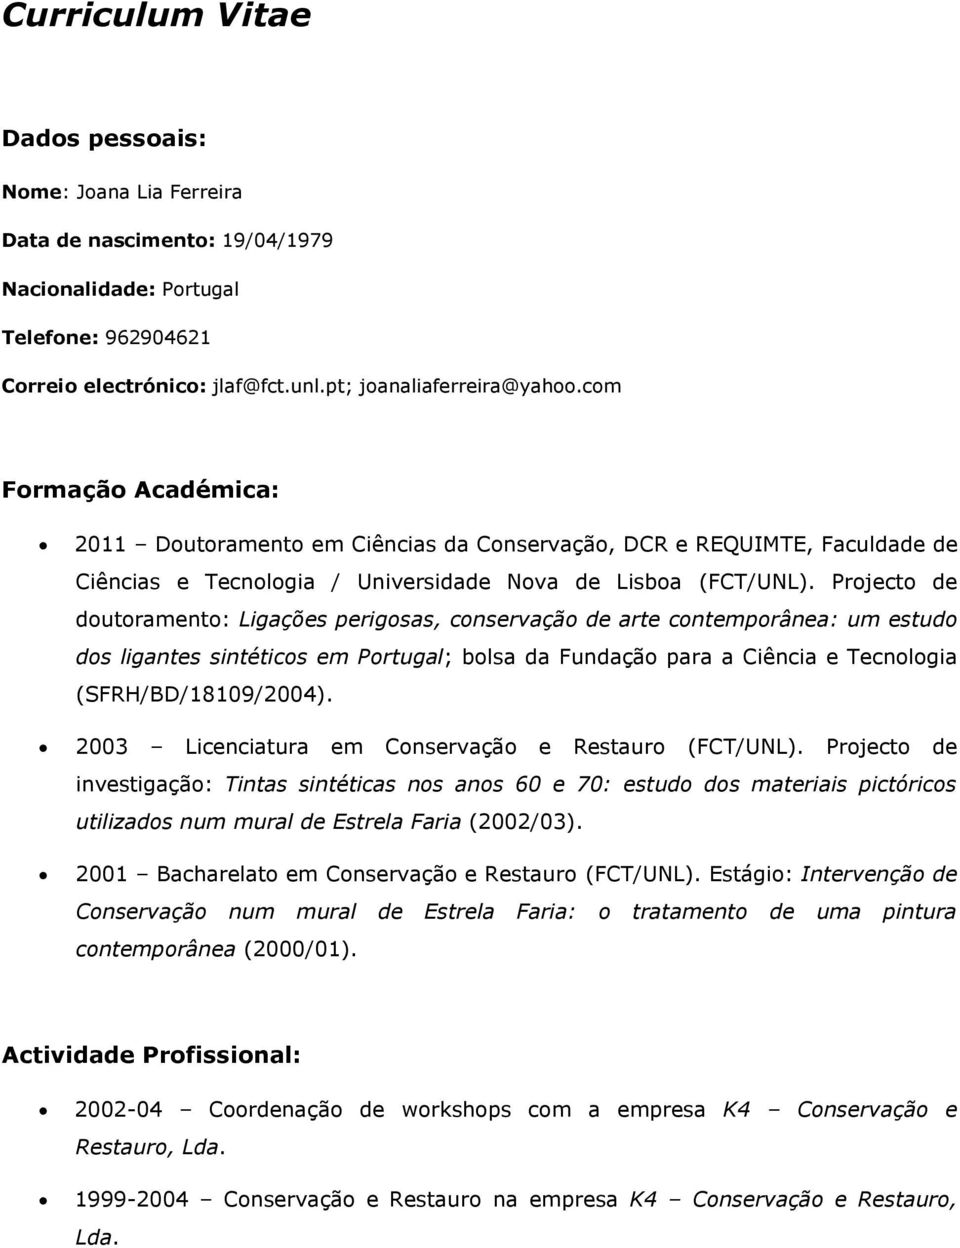 Projecto de doutoramento: Ligações perigosas, conservação de arte contemporânea: um estudo dos ligantes sintéticos em Portugal; bolsa da Fundação para a Ciência e Tecnologia (SFRH/BD/18109/2004).